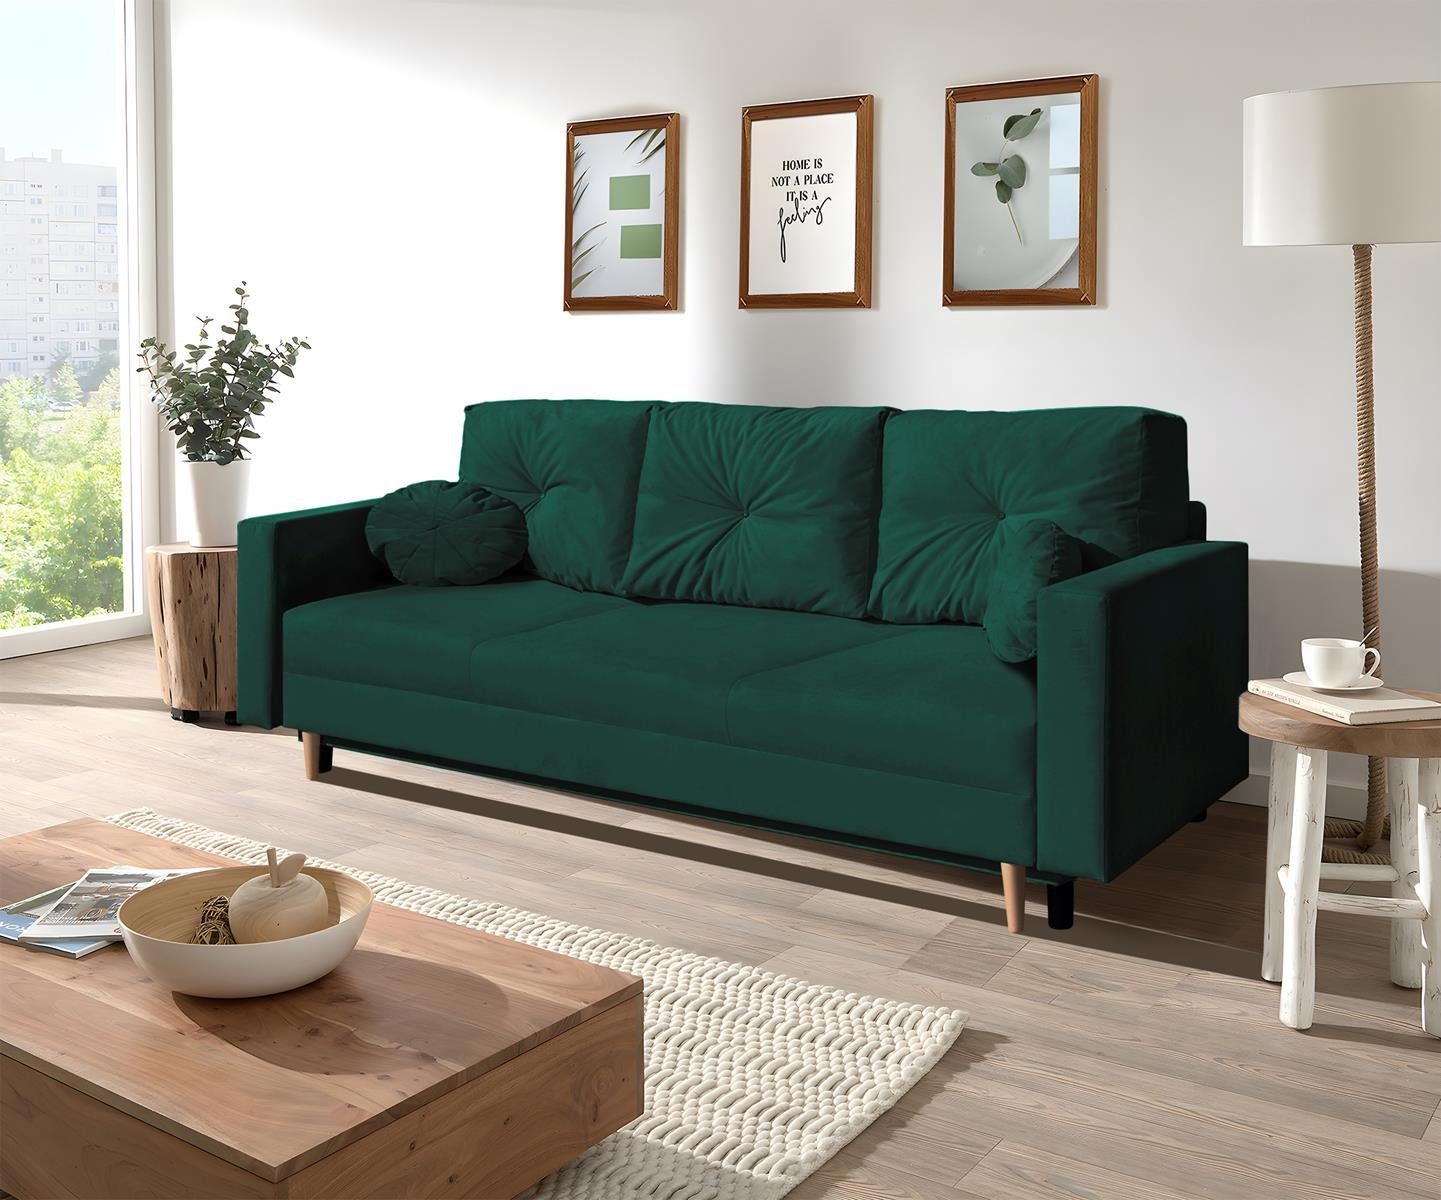 Beautysofa 3-Sitzer MILAN, skandinavisches Design, mit Flasches Holzbeine, Relaxfunktion 28) 3-Sitzer Sofa Wellenunterfederung, Bettkasten, (trinity grün